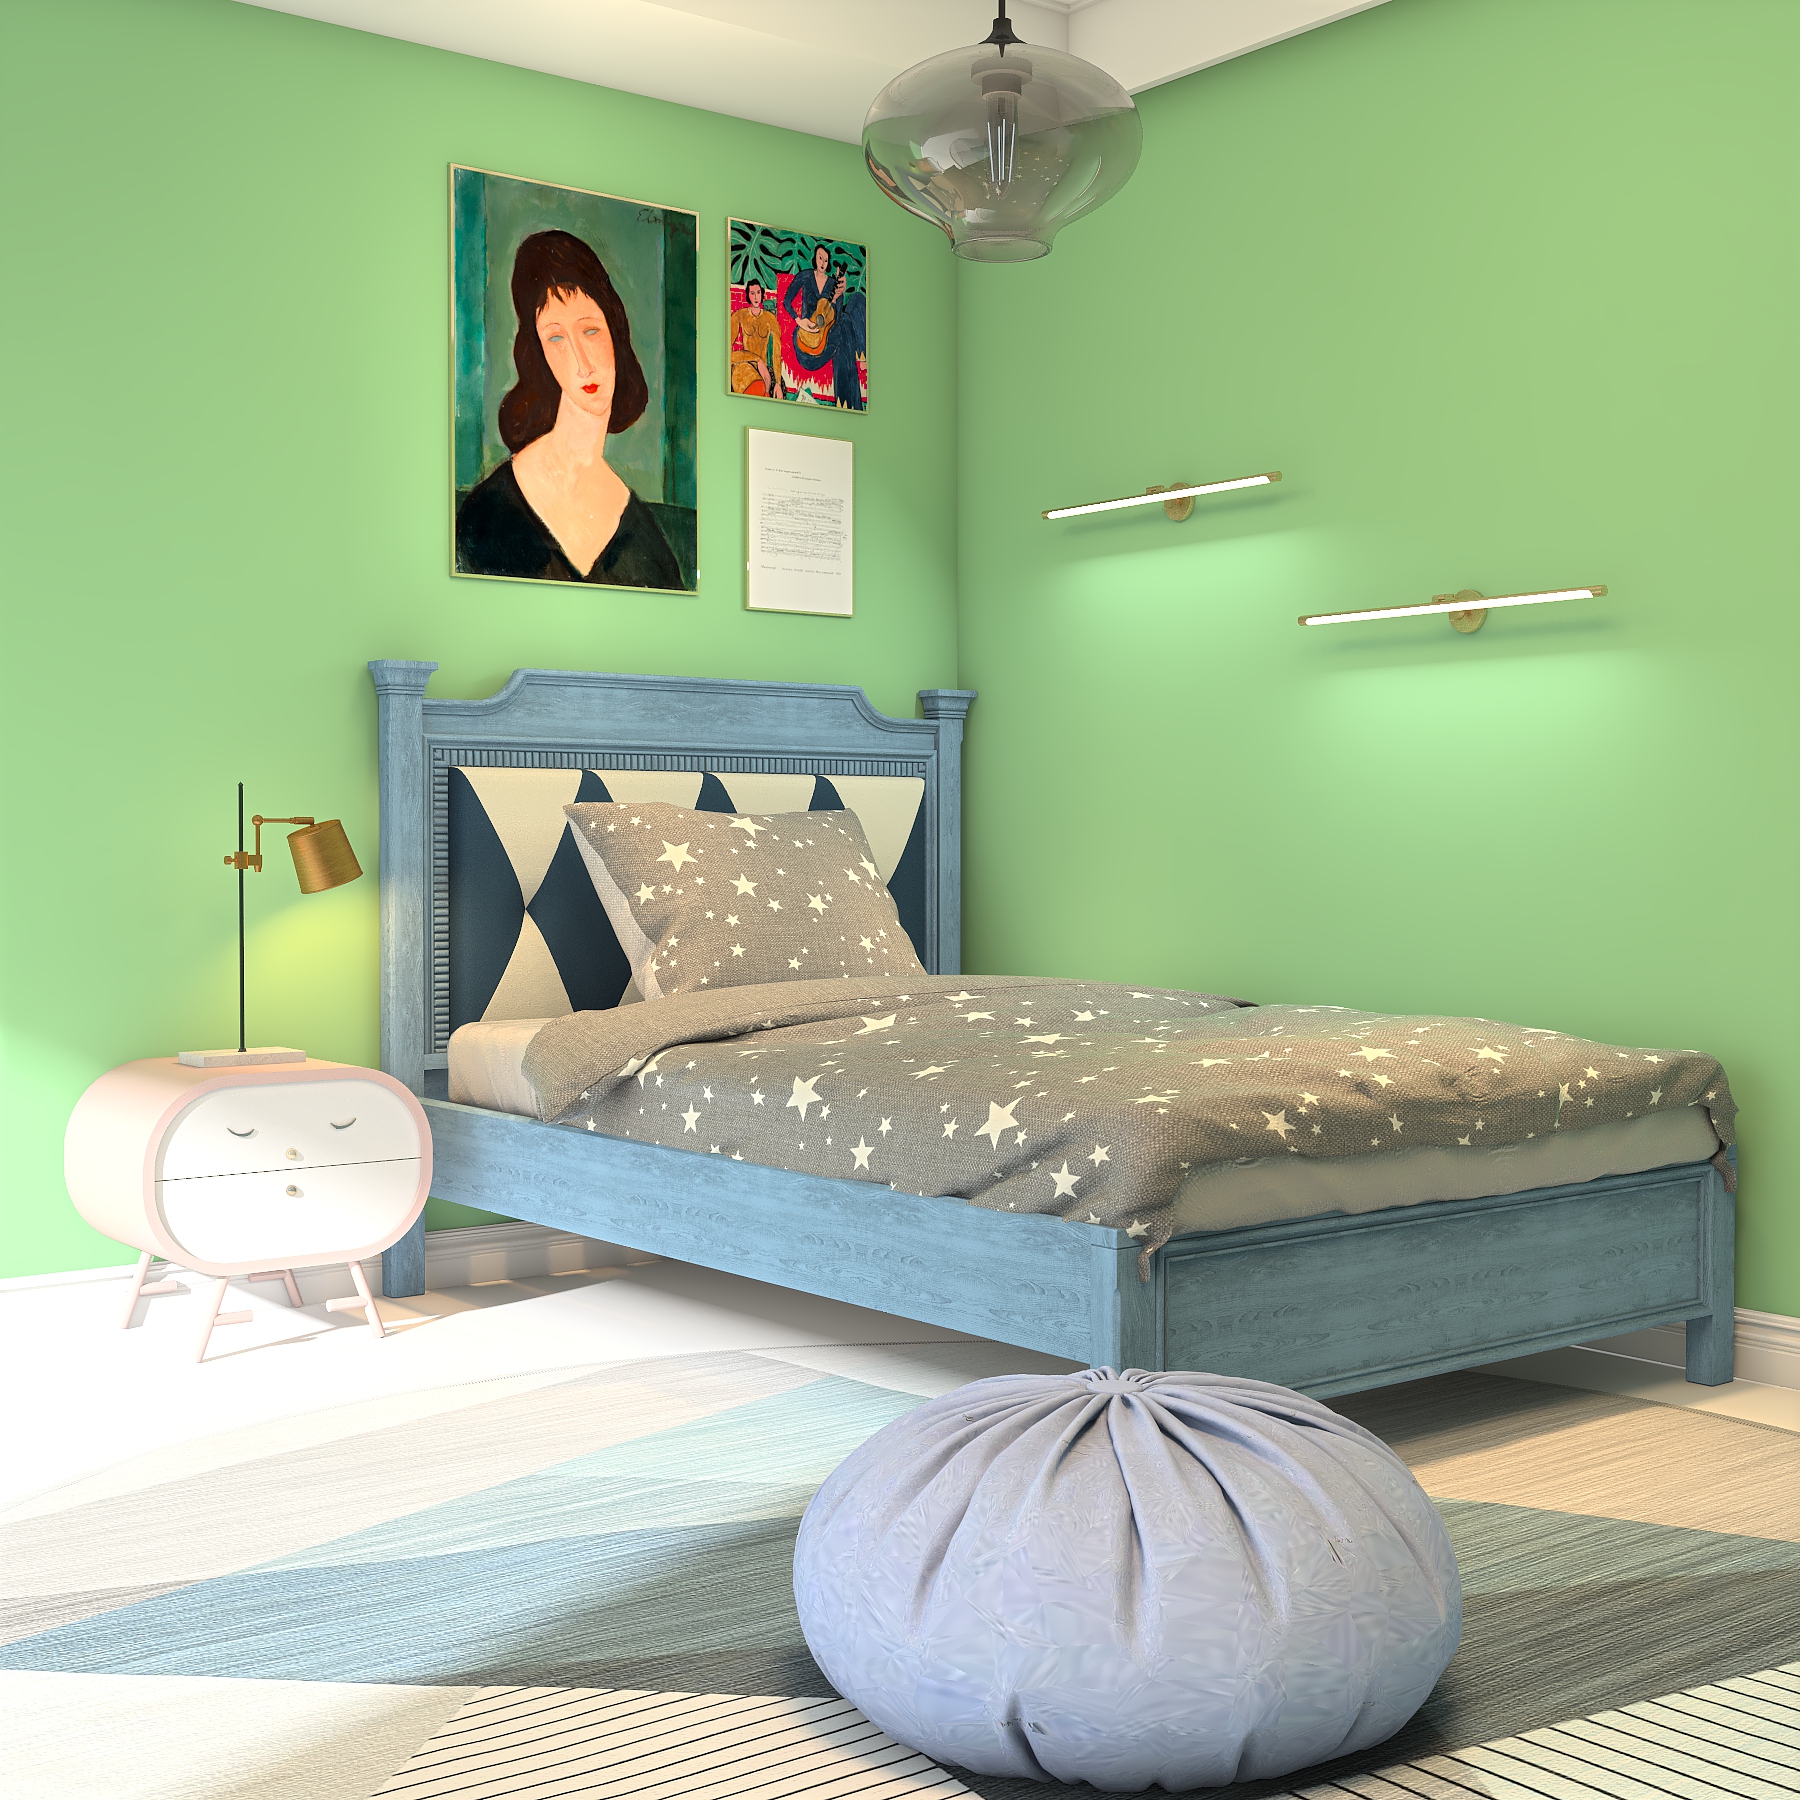 薄荷绿卧室装修效果图图片